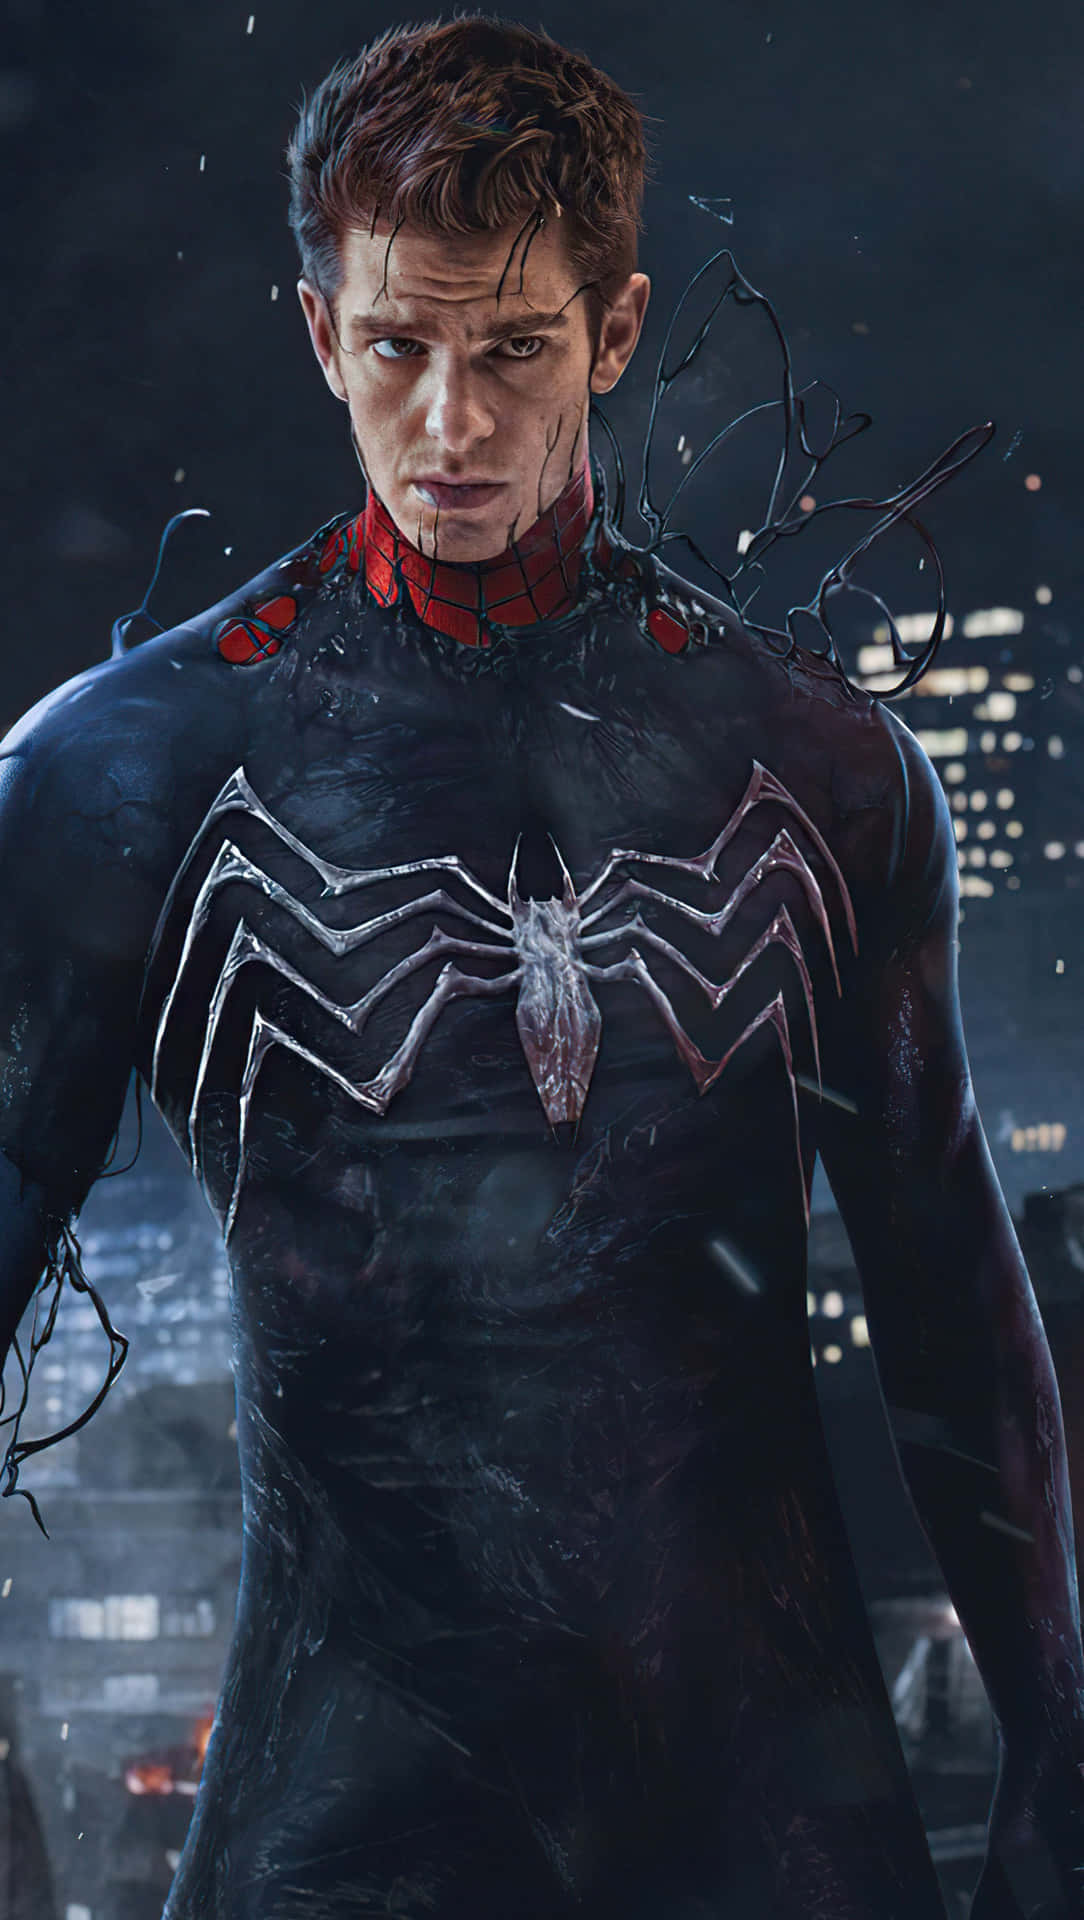 Andrewgarfield Als Peter Parker, Der Erstaunliche Spider-man. Wallpaper